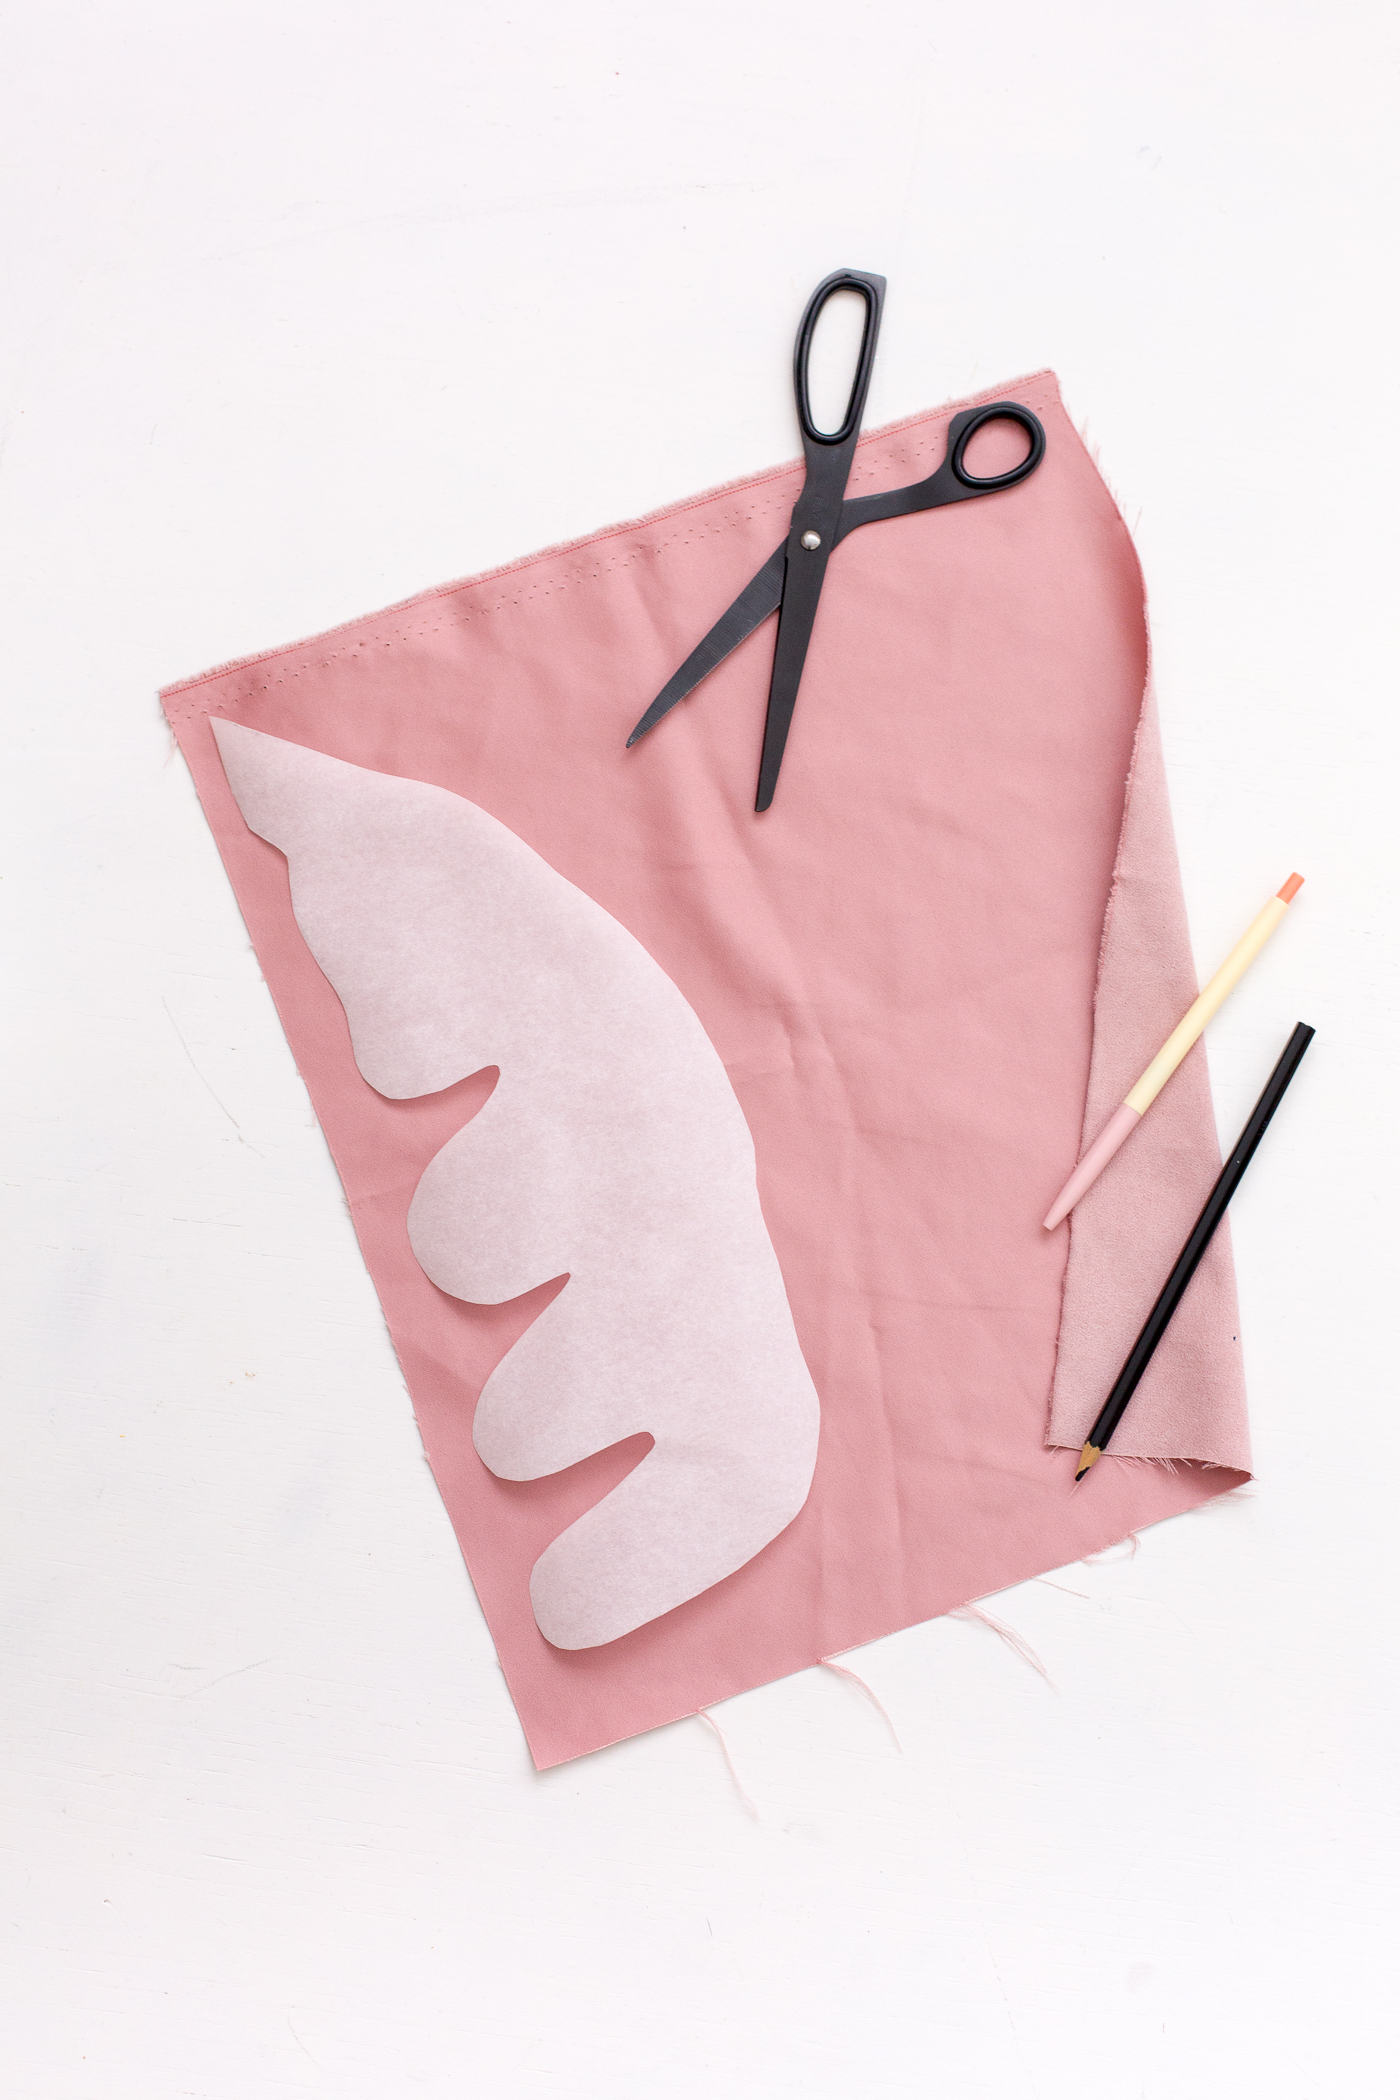 DIY applique fabric canvas | @fallfordiy